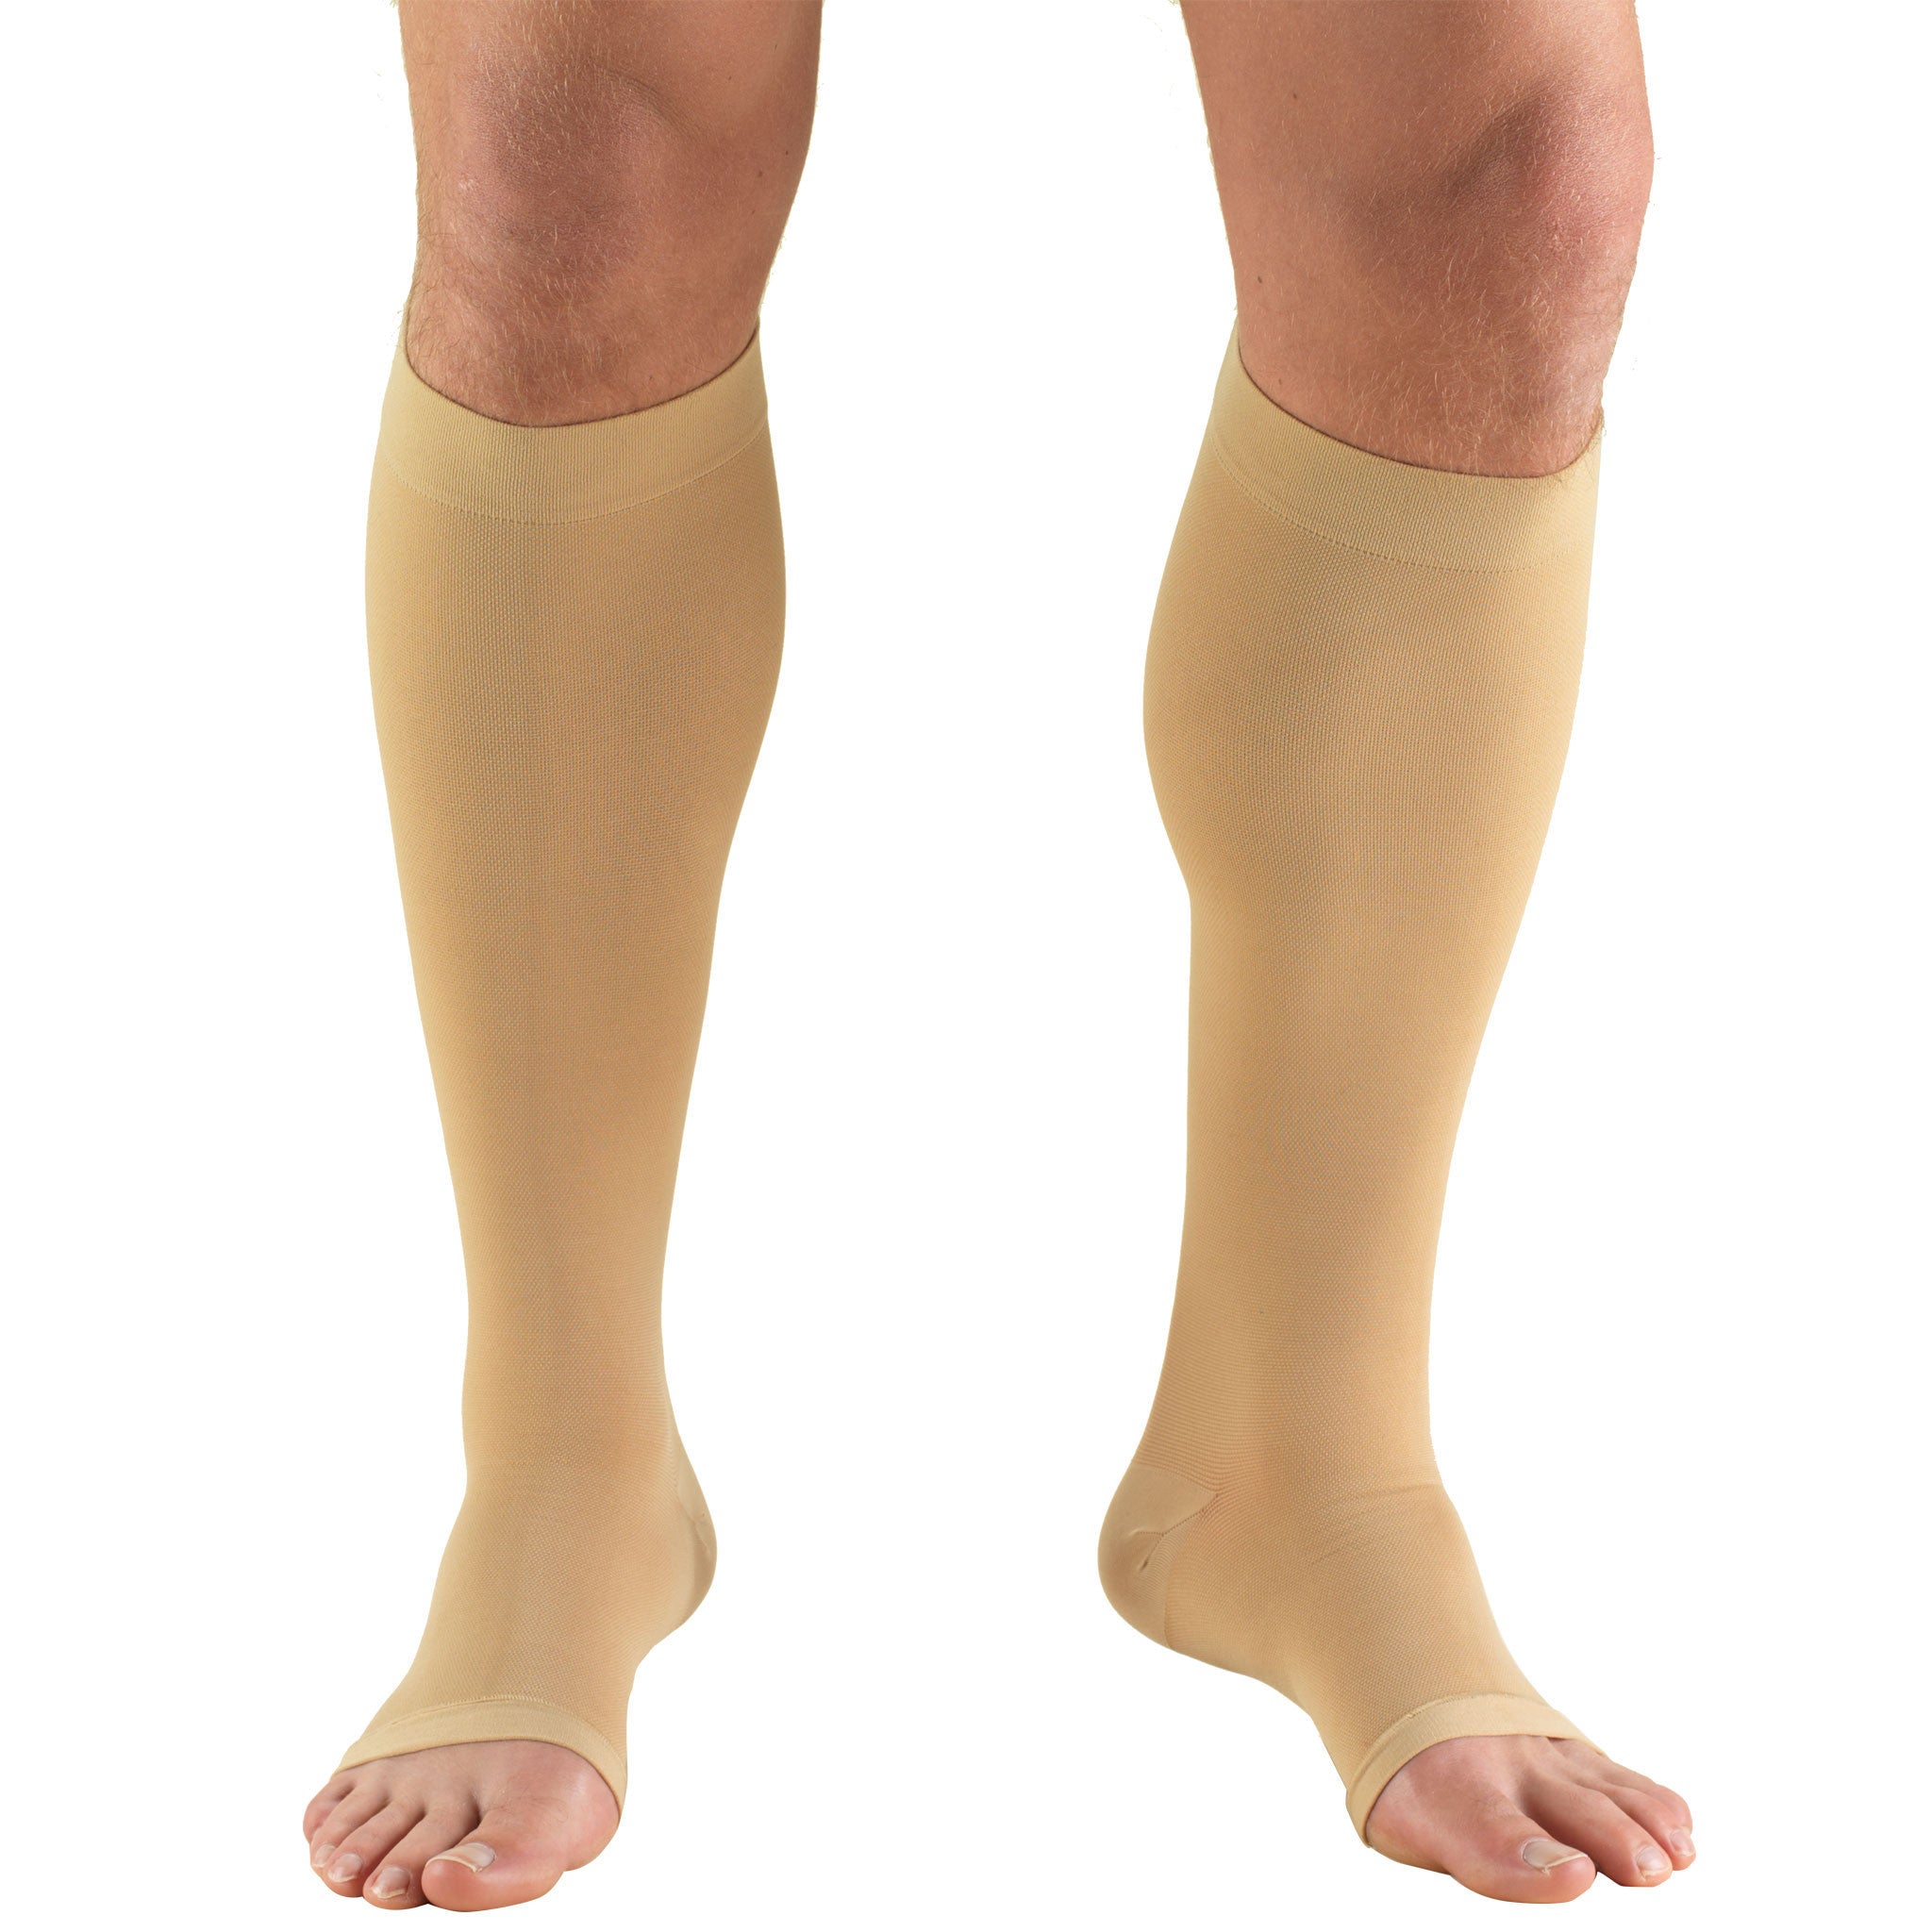 Truform 0865 Stockings 20-30 Below Knee Open Toe Beige